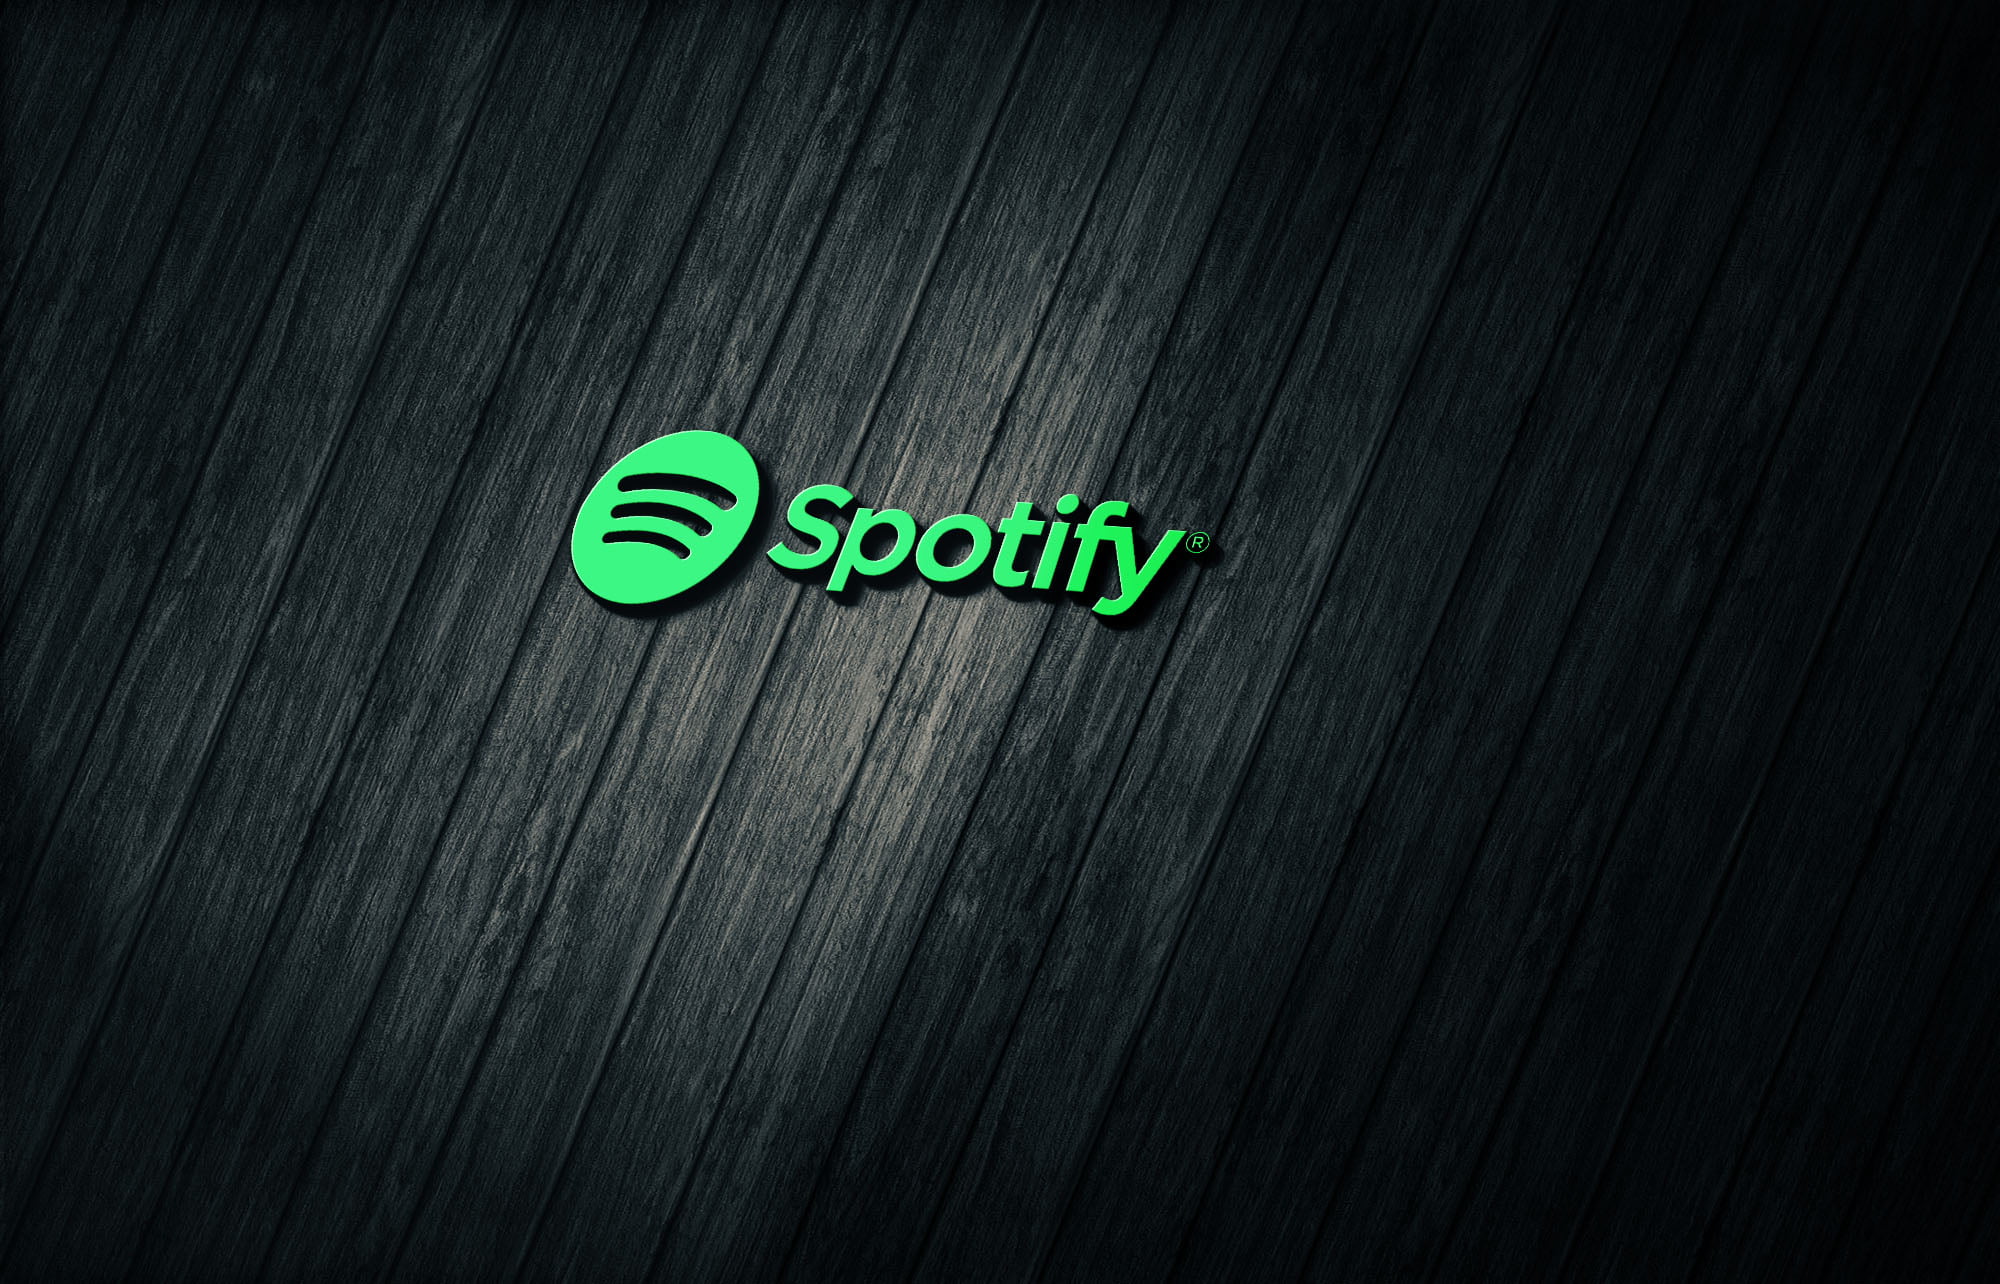 Spotify on 3d dark wood mockup